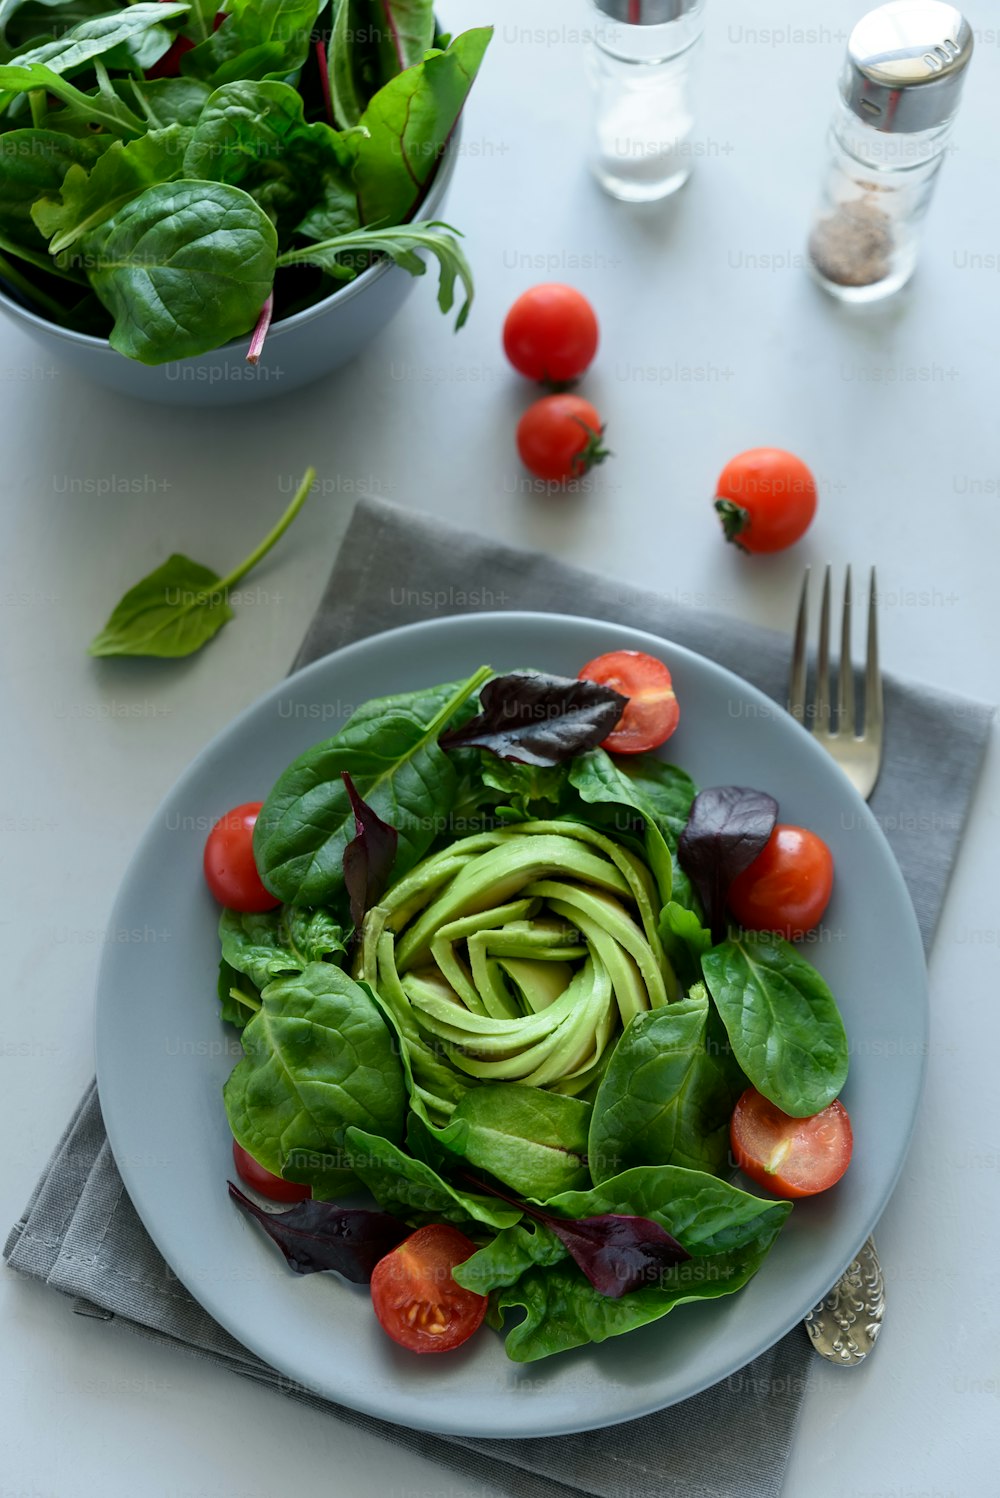 Ensalada mixta con aguacate, espinacas, tomates y hojas de remolacha sobre fondo gris de madera. Concepto de comida vegetariana. Enfoque selectivo.